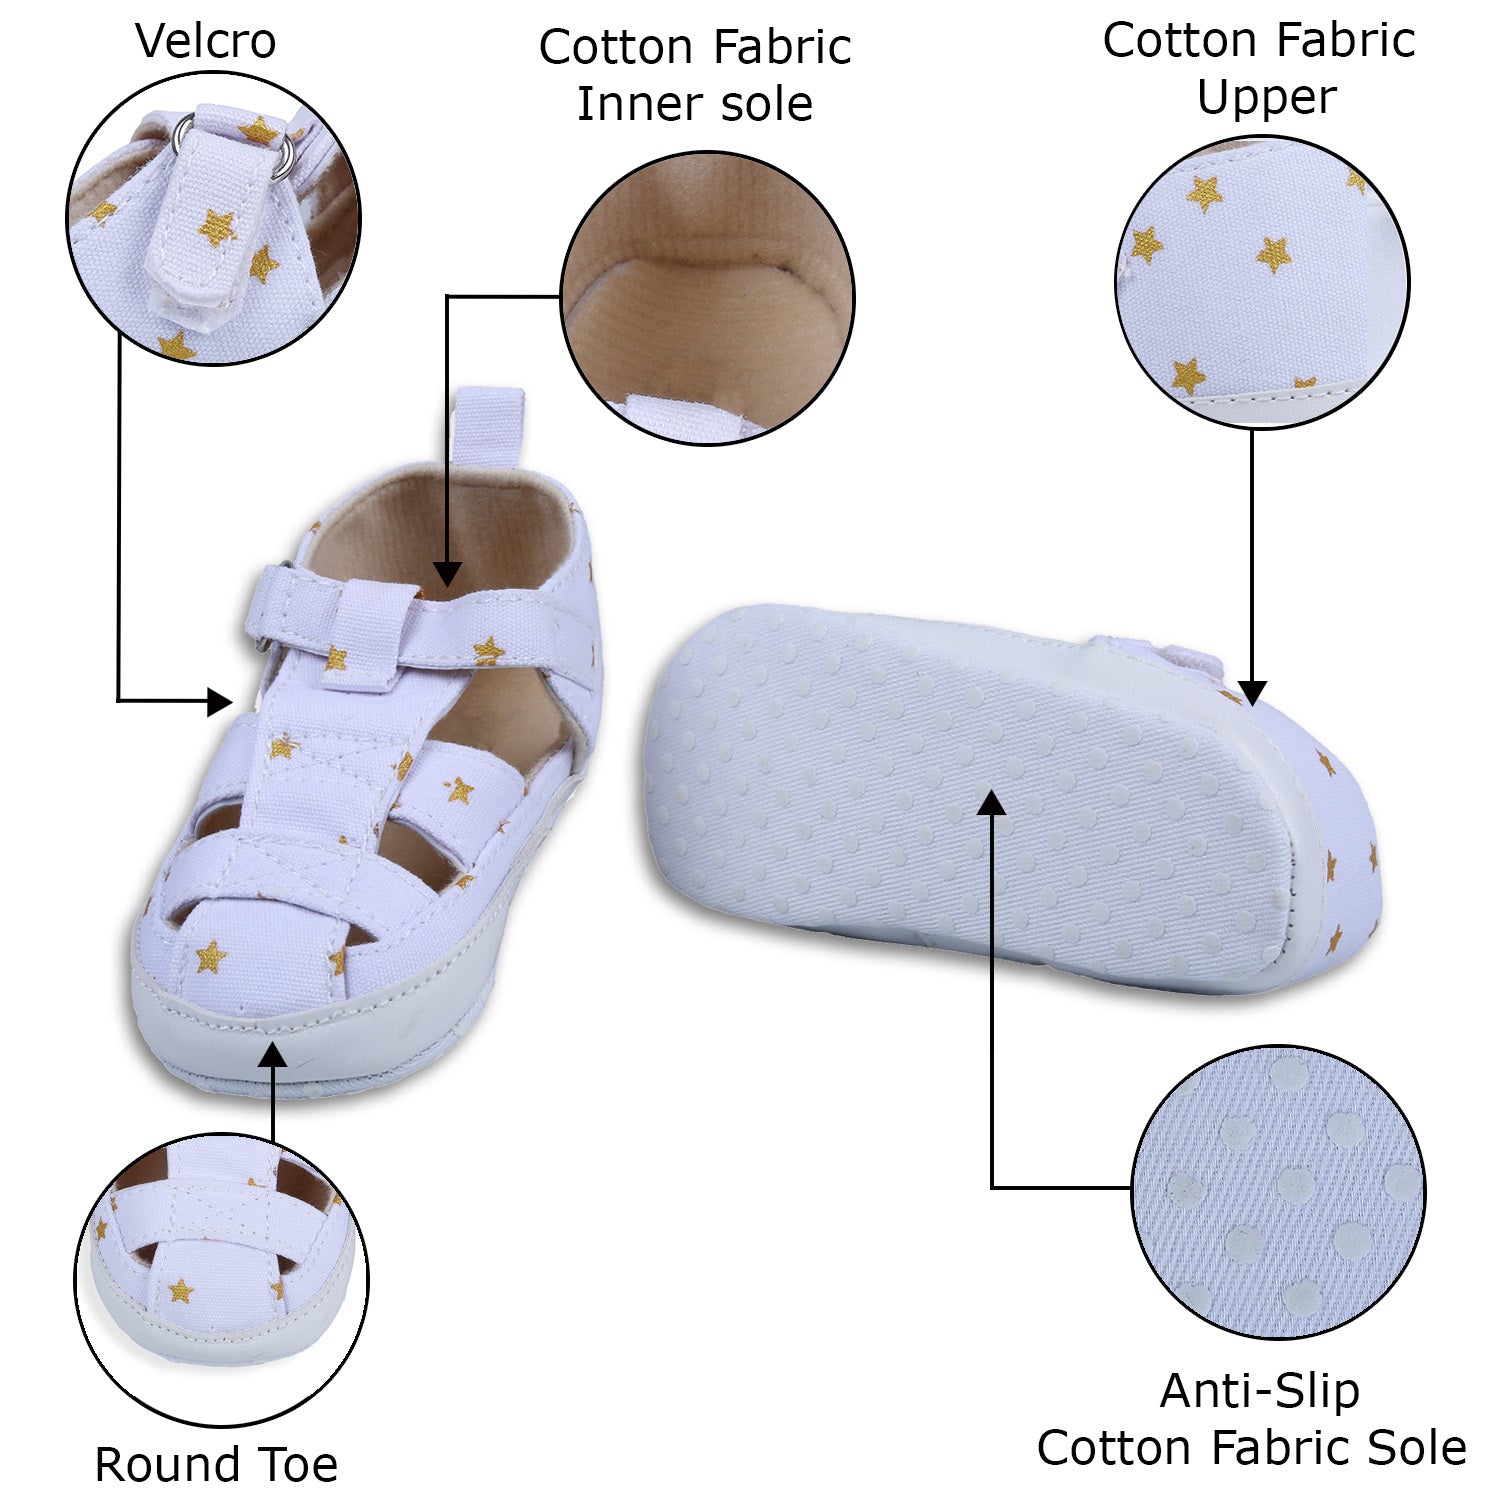 Star Premium Anti-Slip Velcro Hook-Loop Sandal Booties - White - Baby Moo